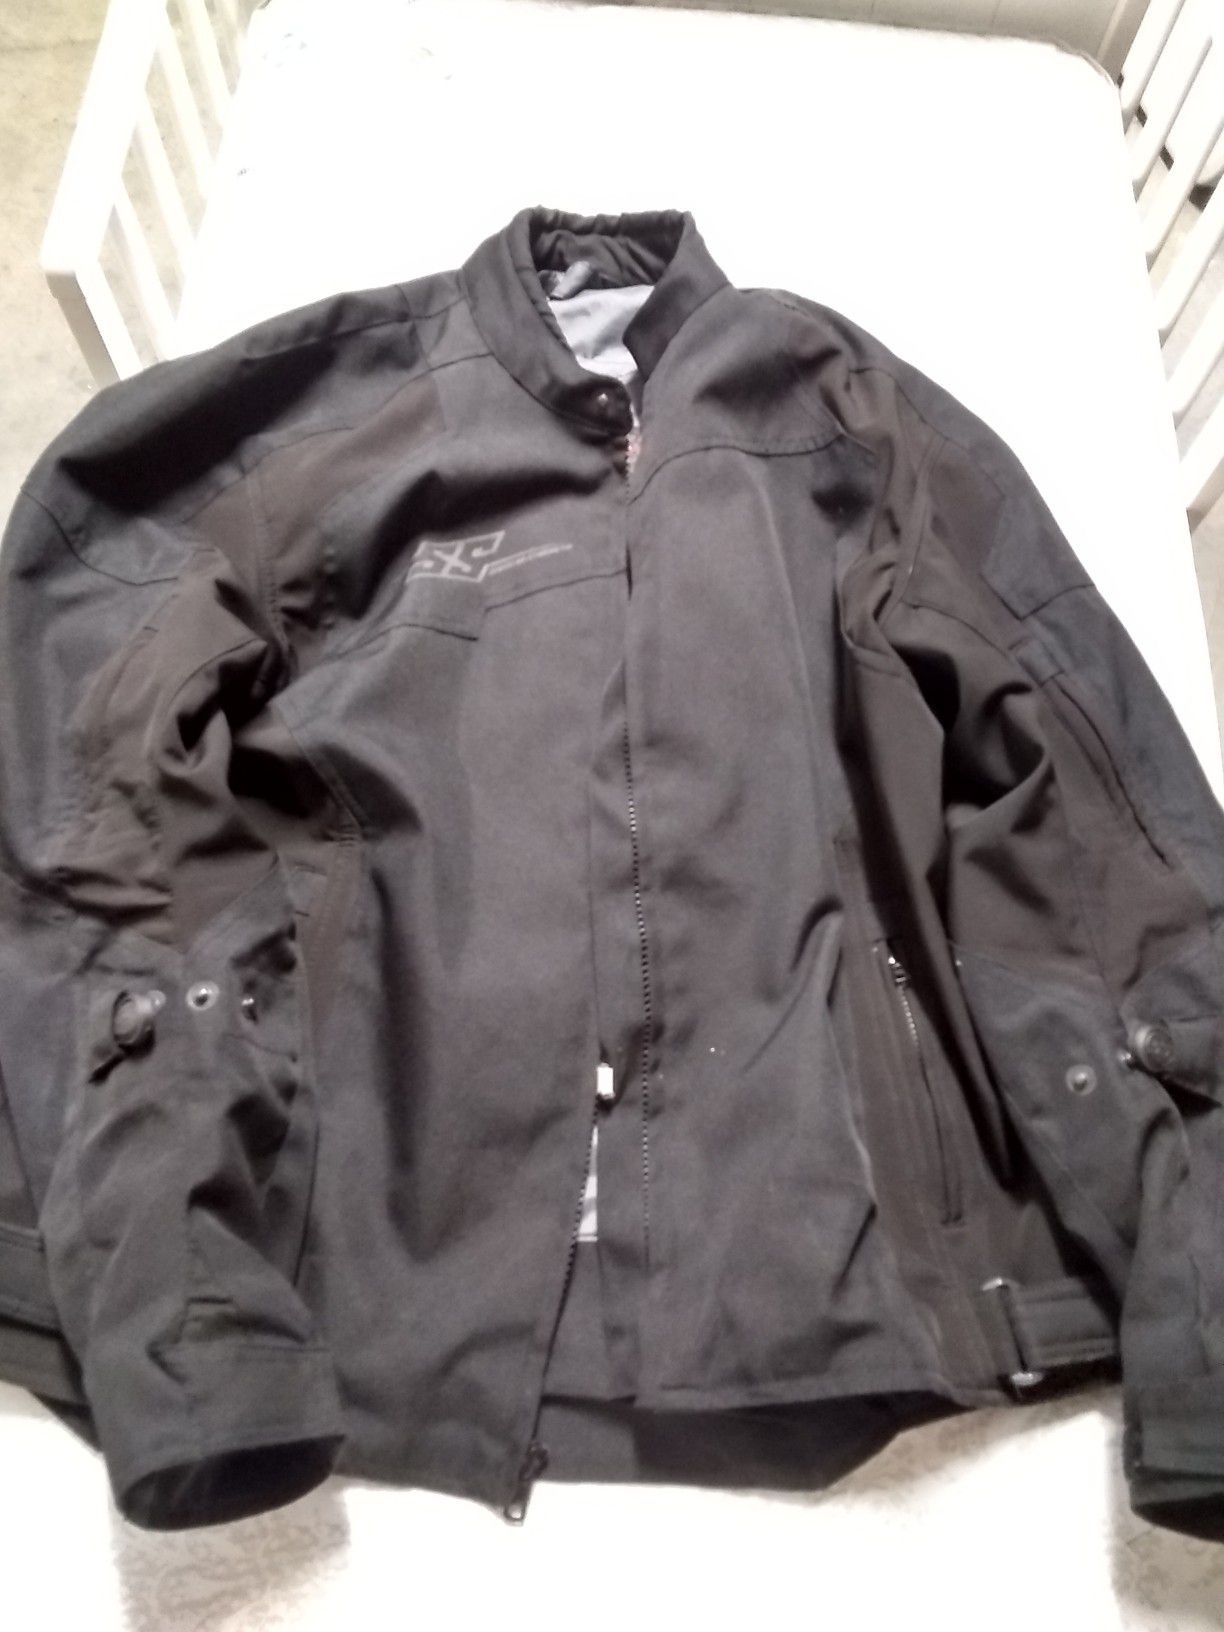 XL motorcycle jacket